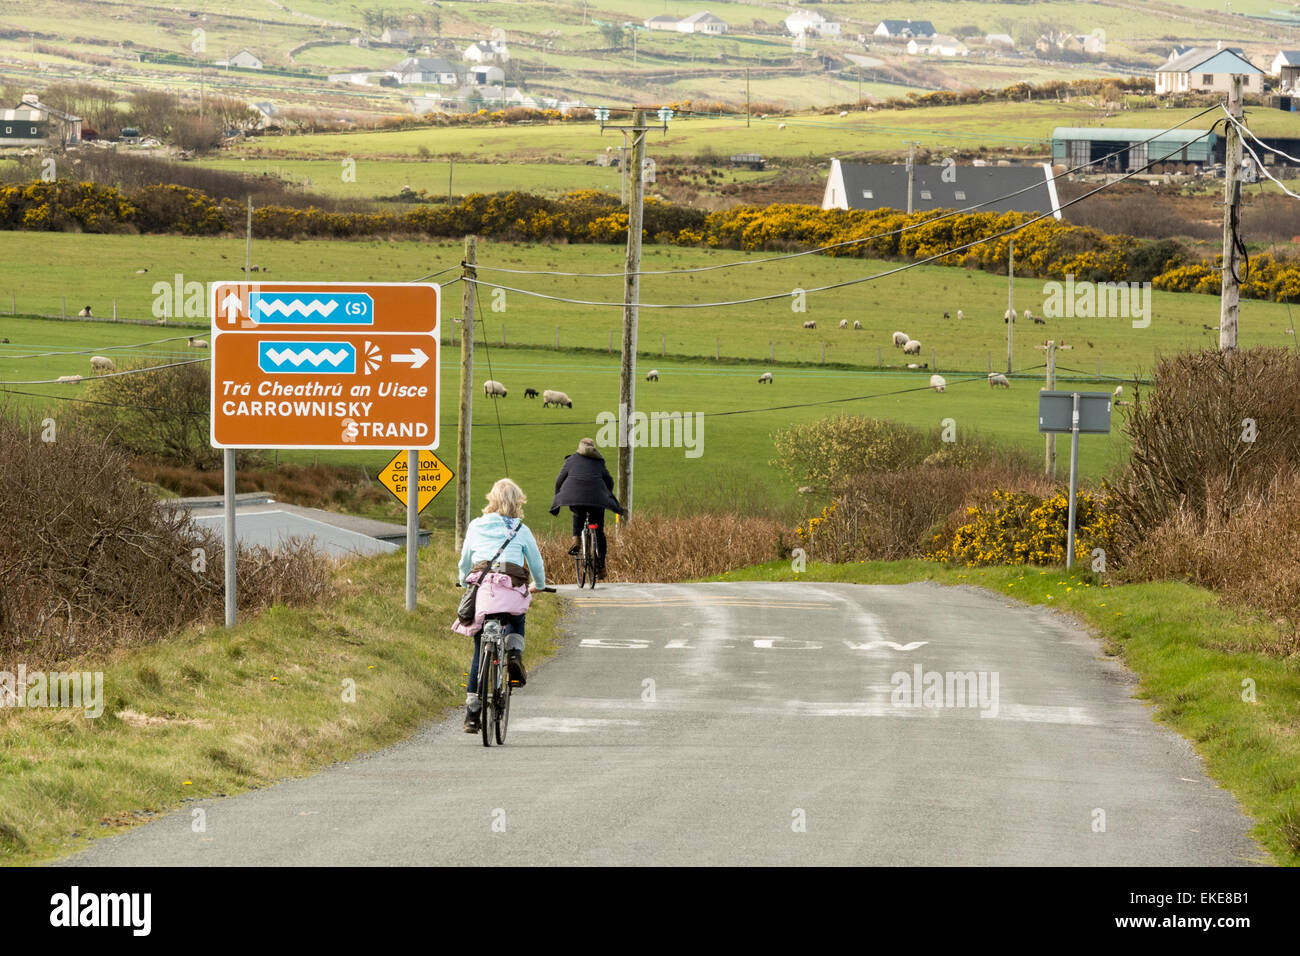 Straßen- und Touring Route entlang der wilden Atlantik Weg an der West Küste von Irland Stockfoto